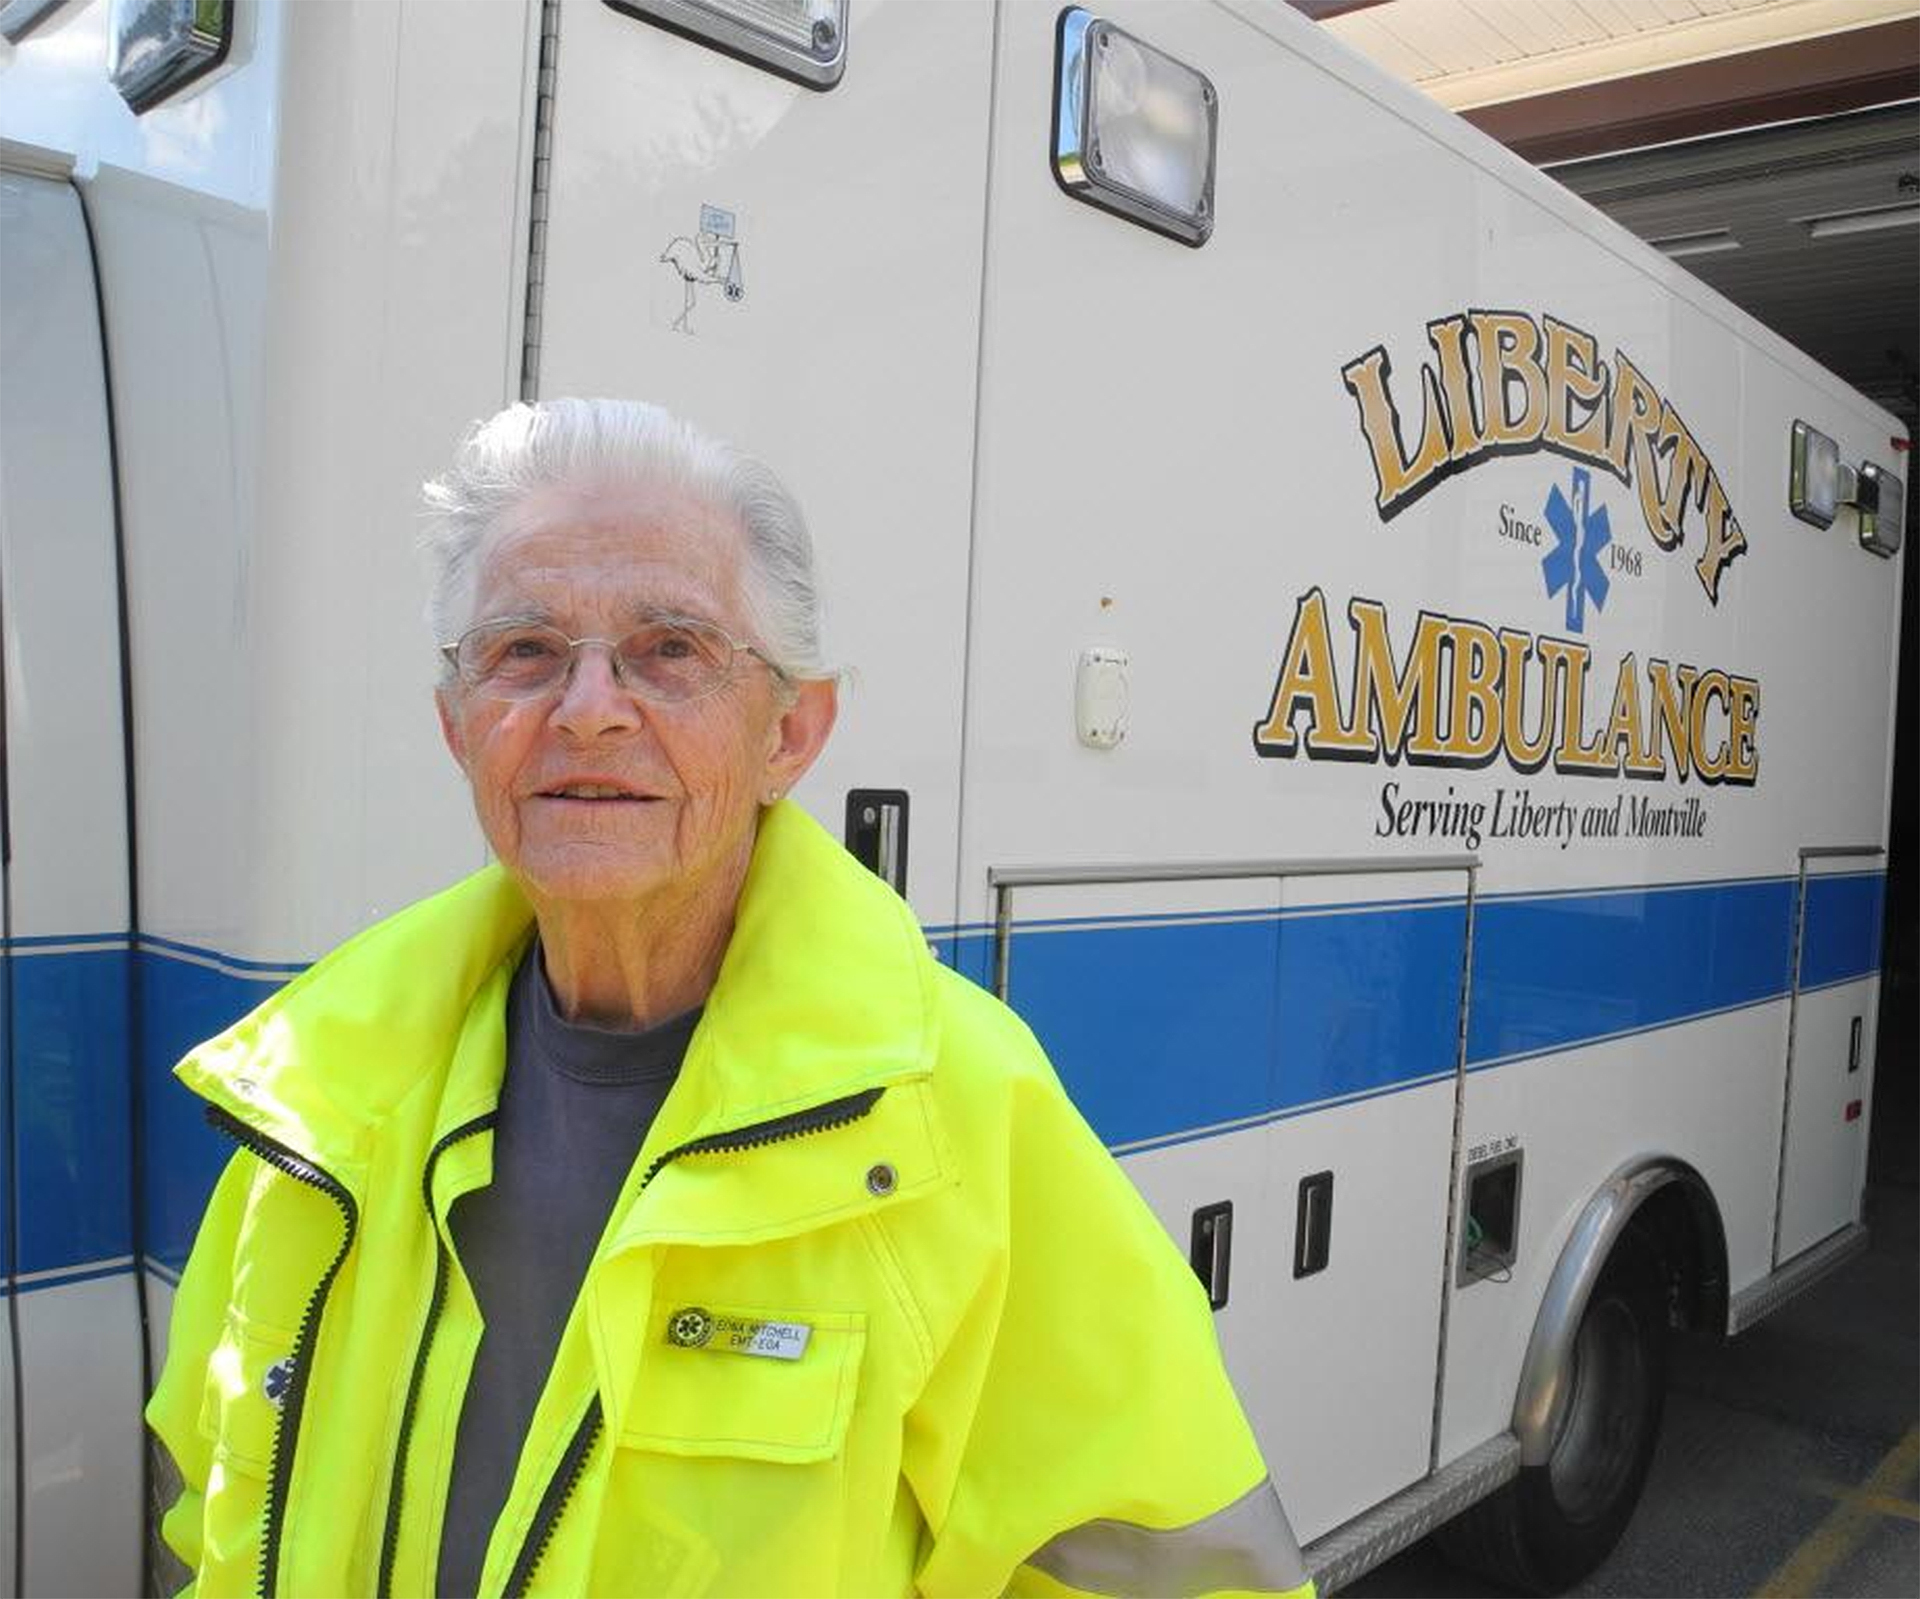 Granny still volunteering as ambulance driver at 87